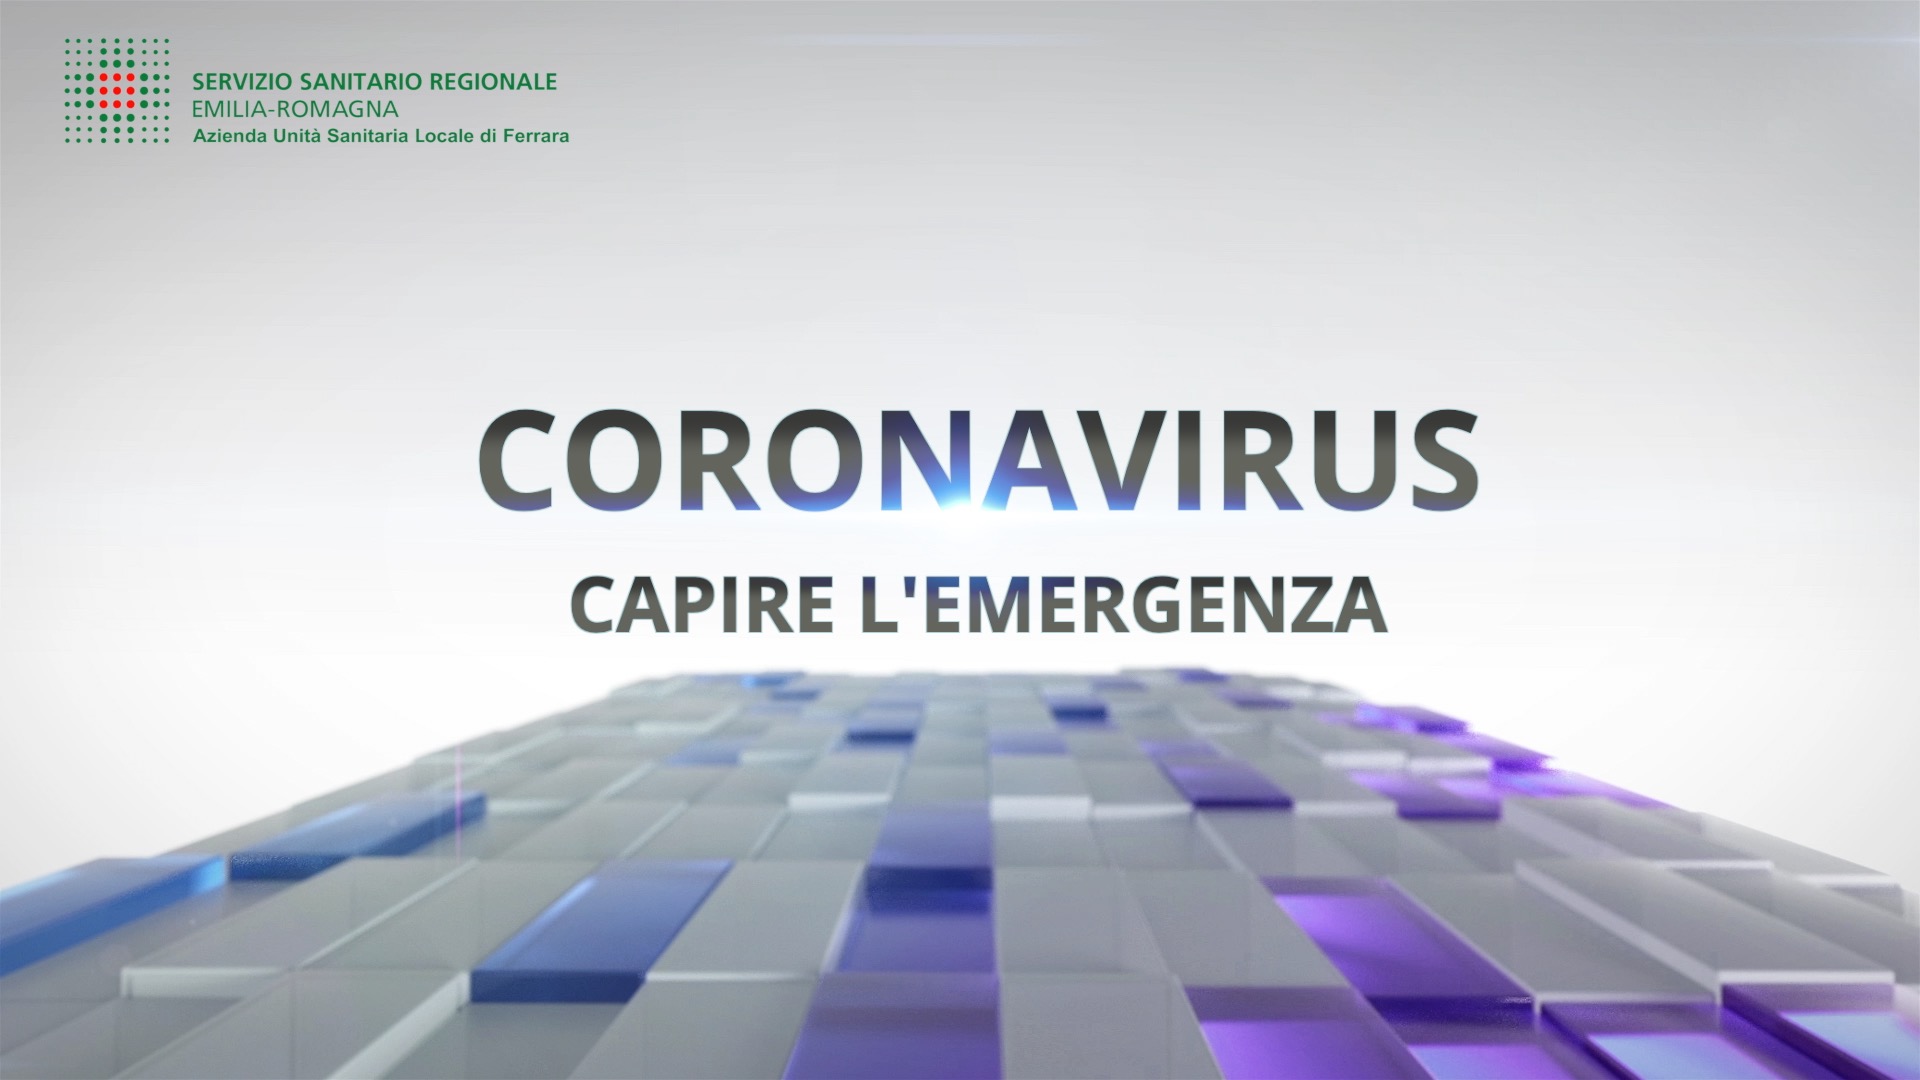 “Coronavirus capire l'emergenza” -  Le opportunità della Telemedicina